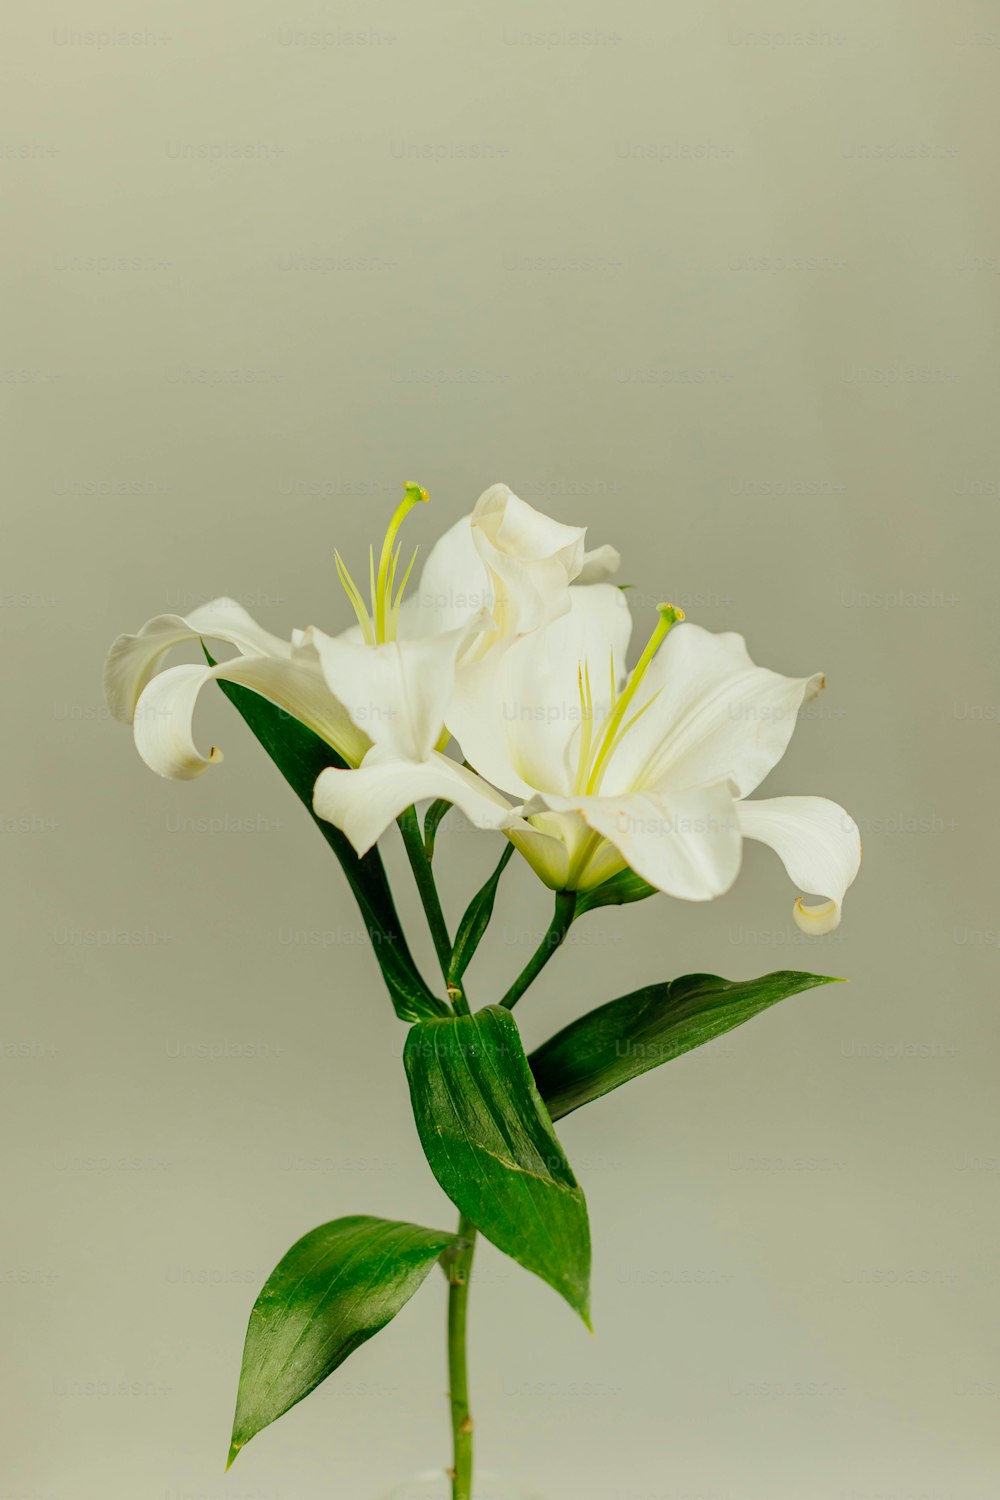 꽃병에 녹색 잎이있는 흰색 꽃